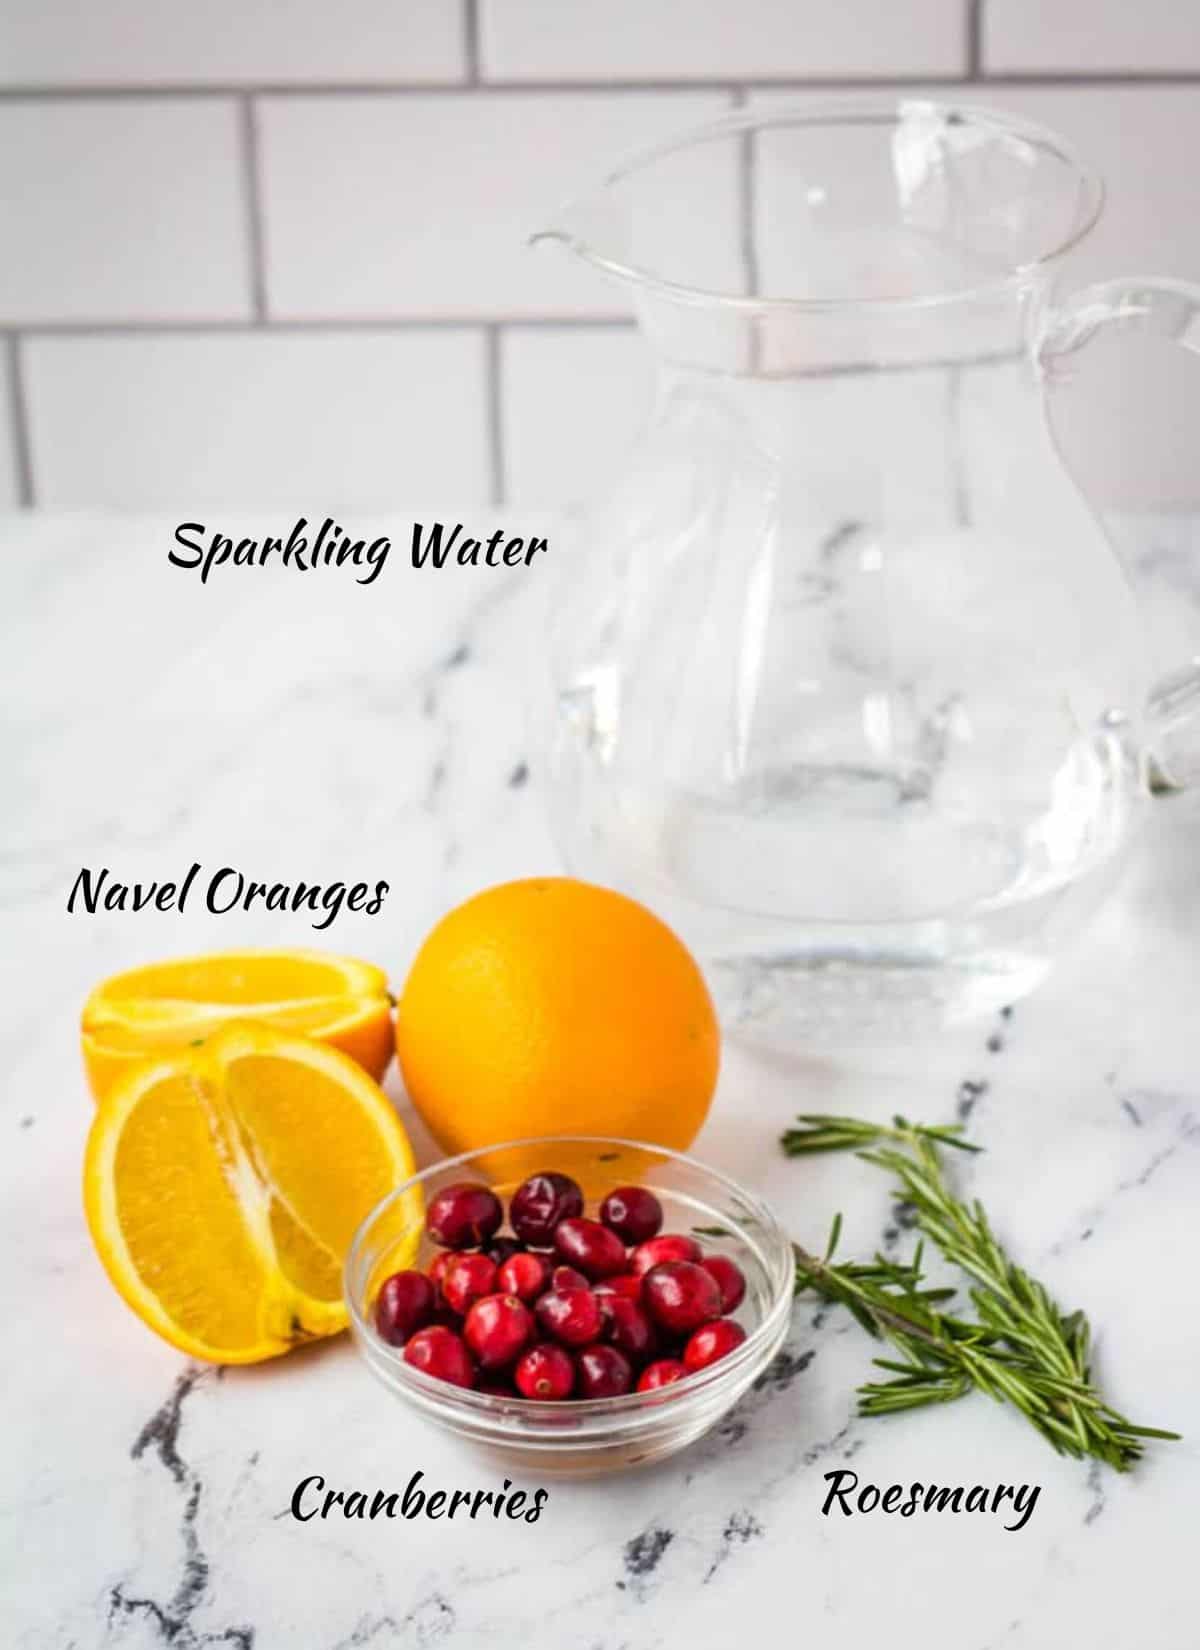 Orange mocktail ingredients: sparkling water, naval oranges, cranberries, and rosemary.